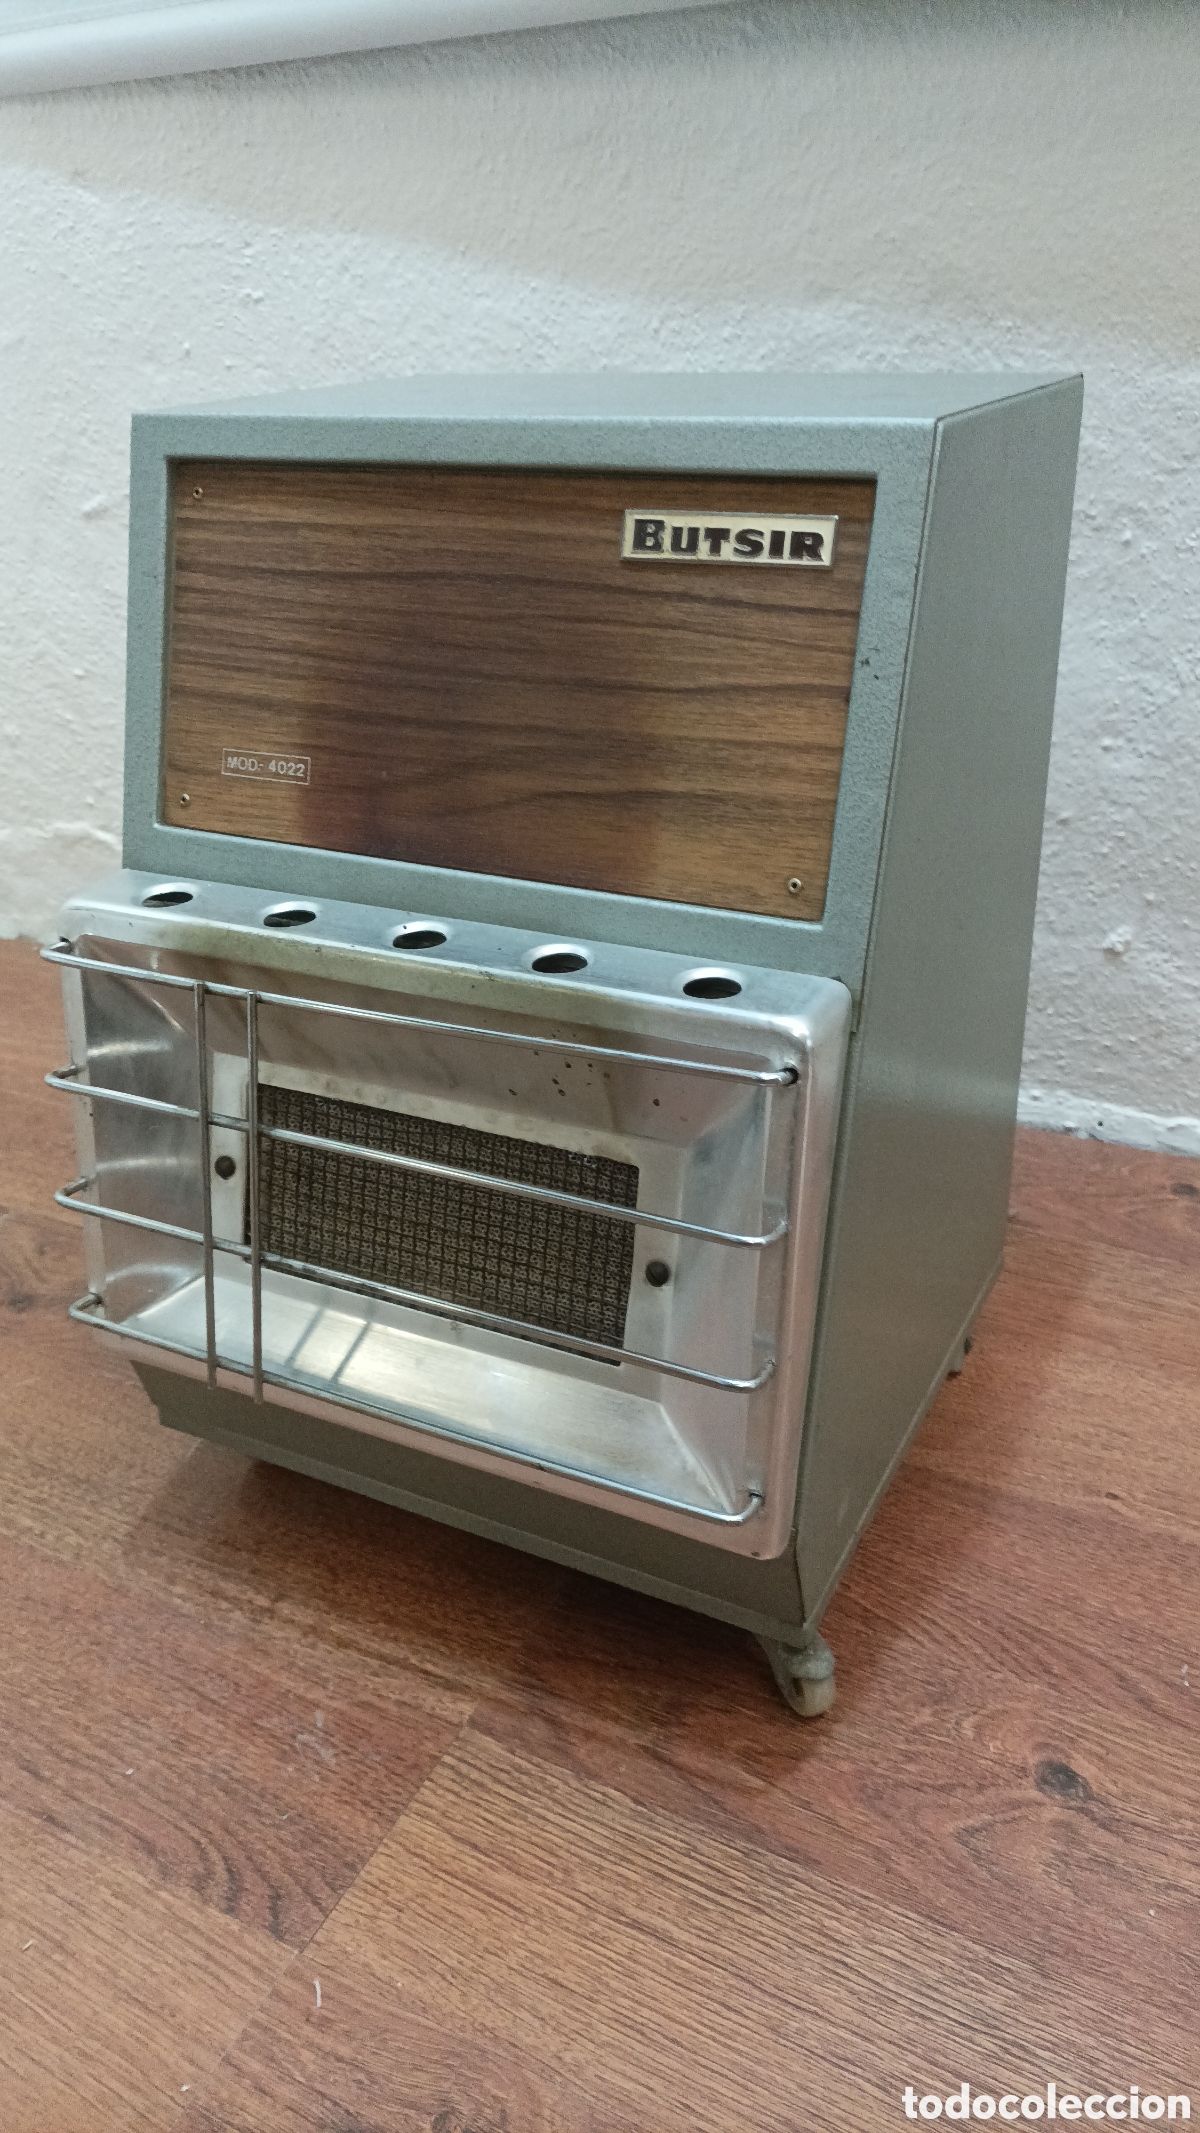 antigua estufa catalítica (años 50) - Compra venta en todocoleccion